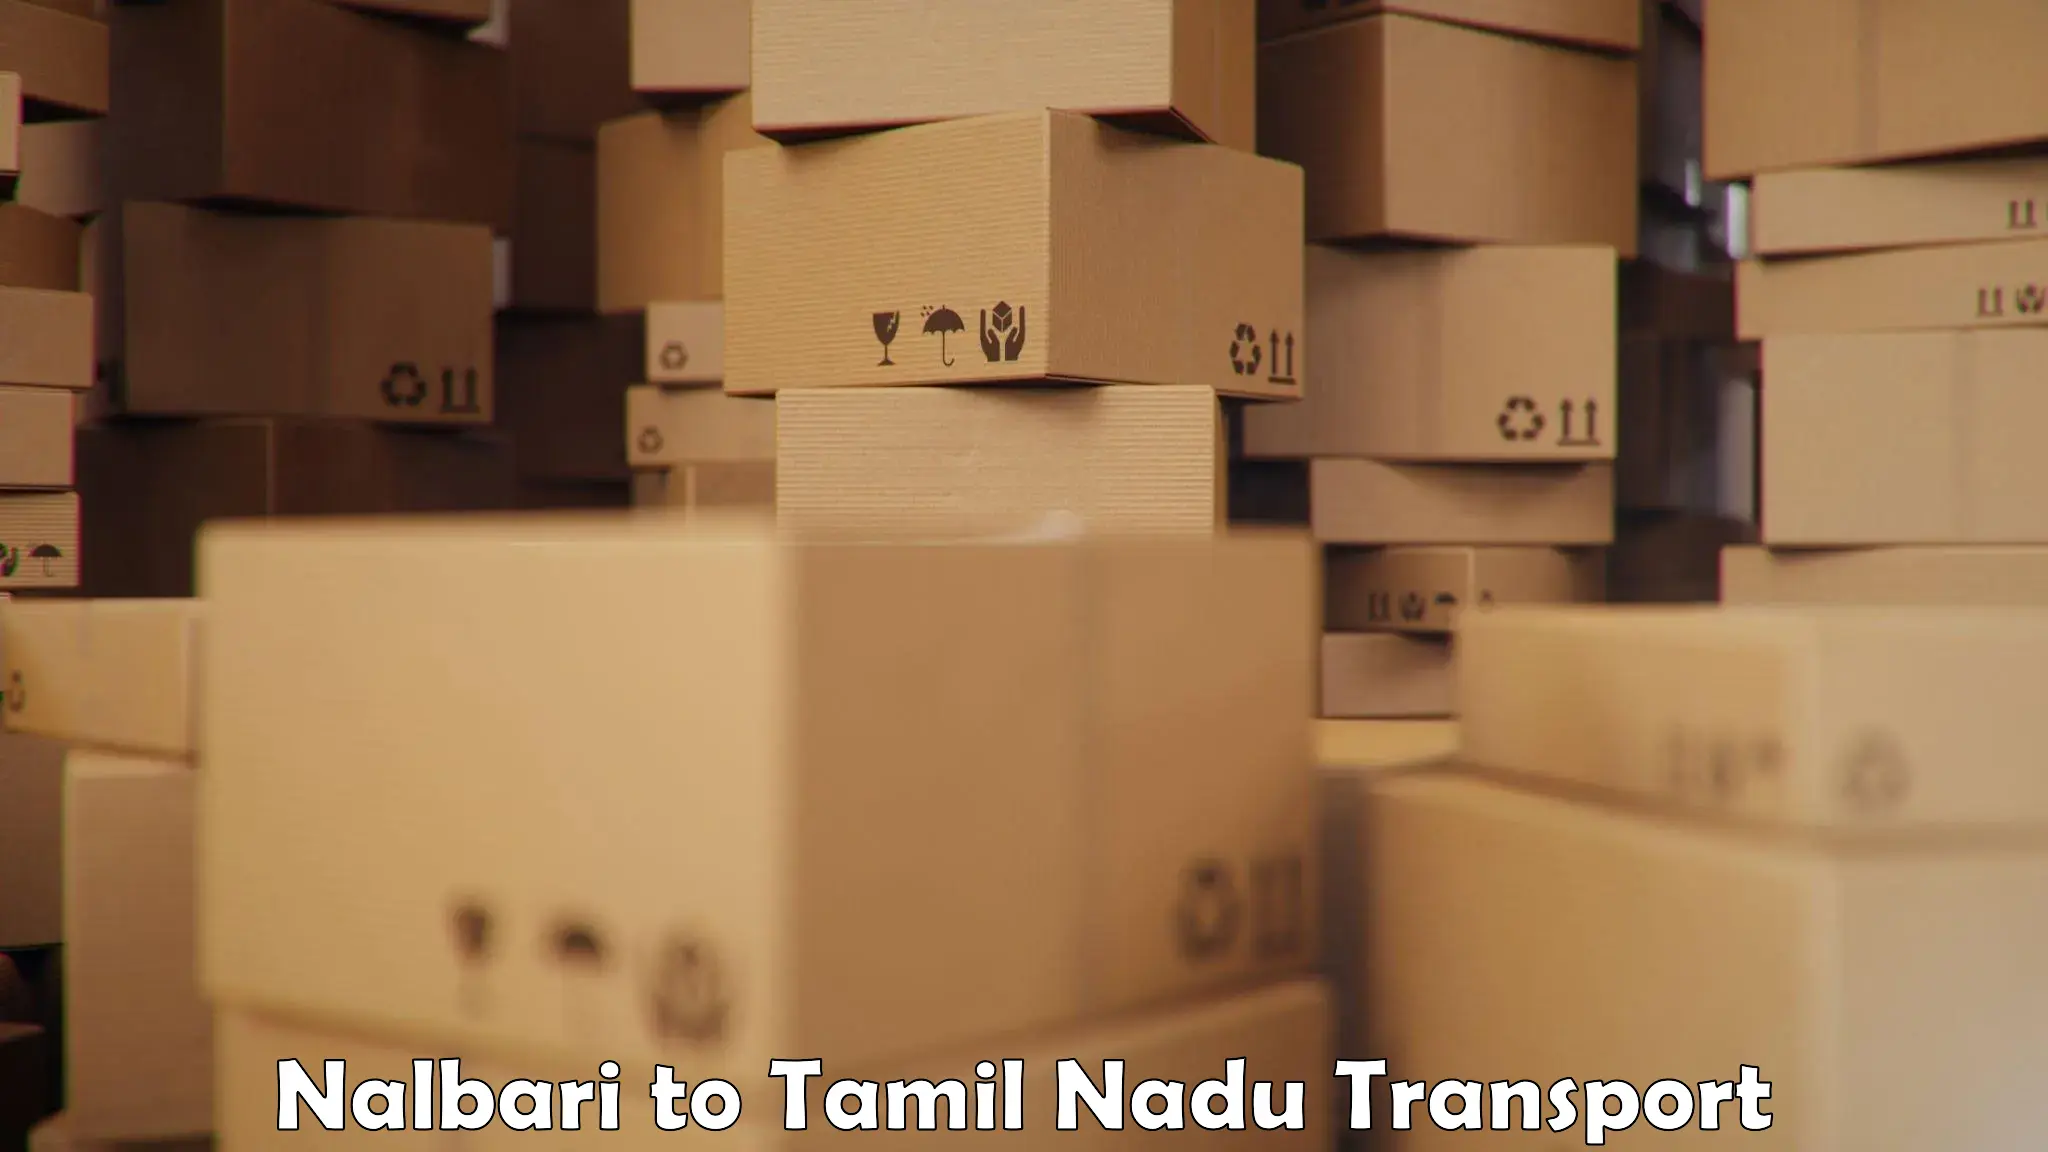 All India transport service Nalbari to Thuckalay